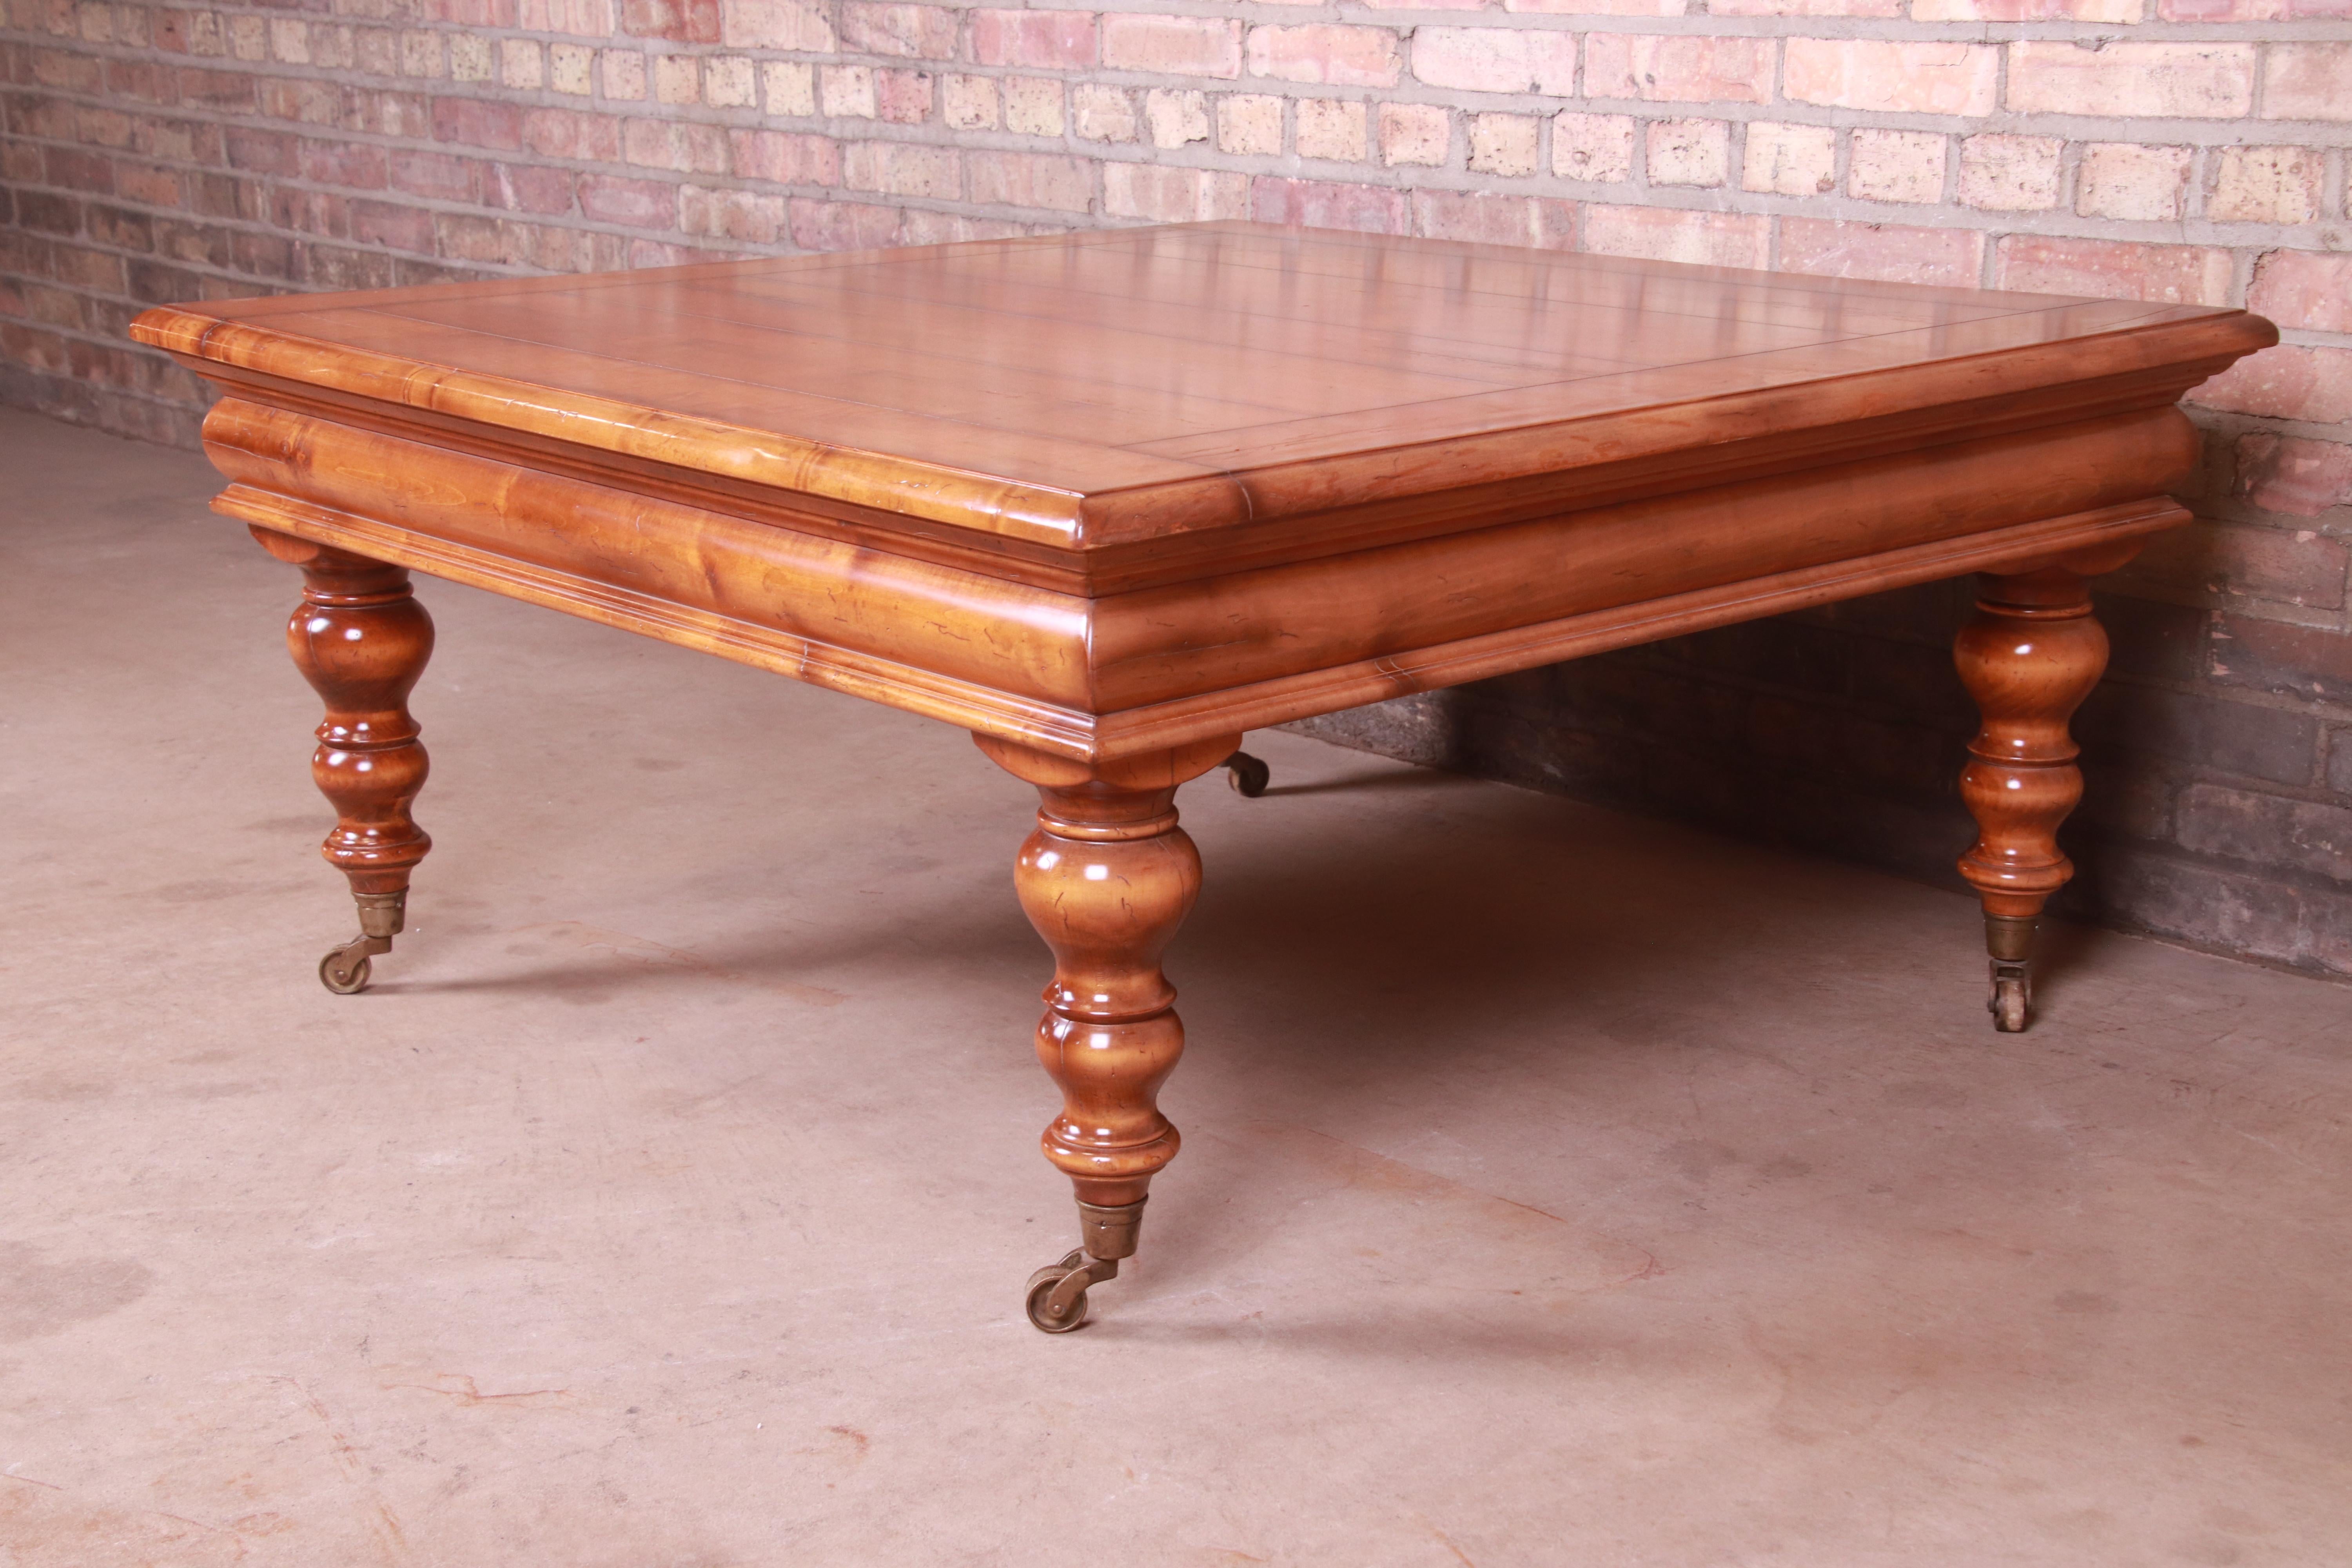 Une magnifique table basse provinciale italienne

Collection 